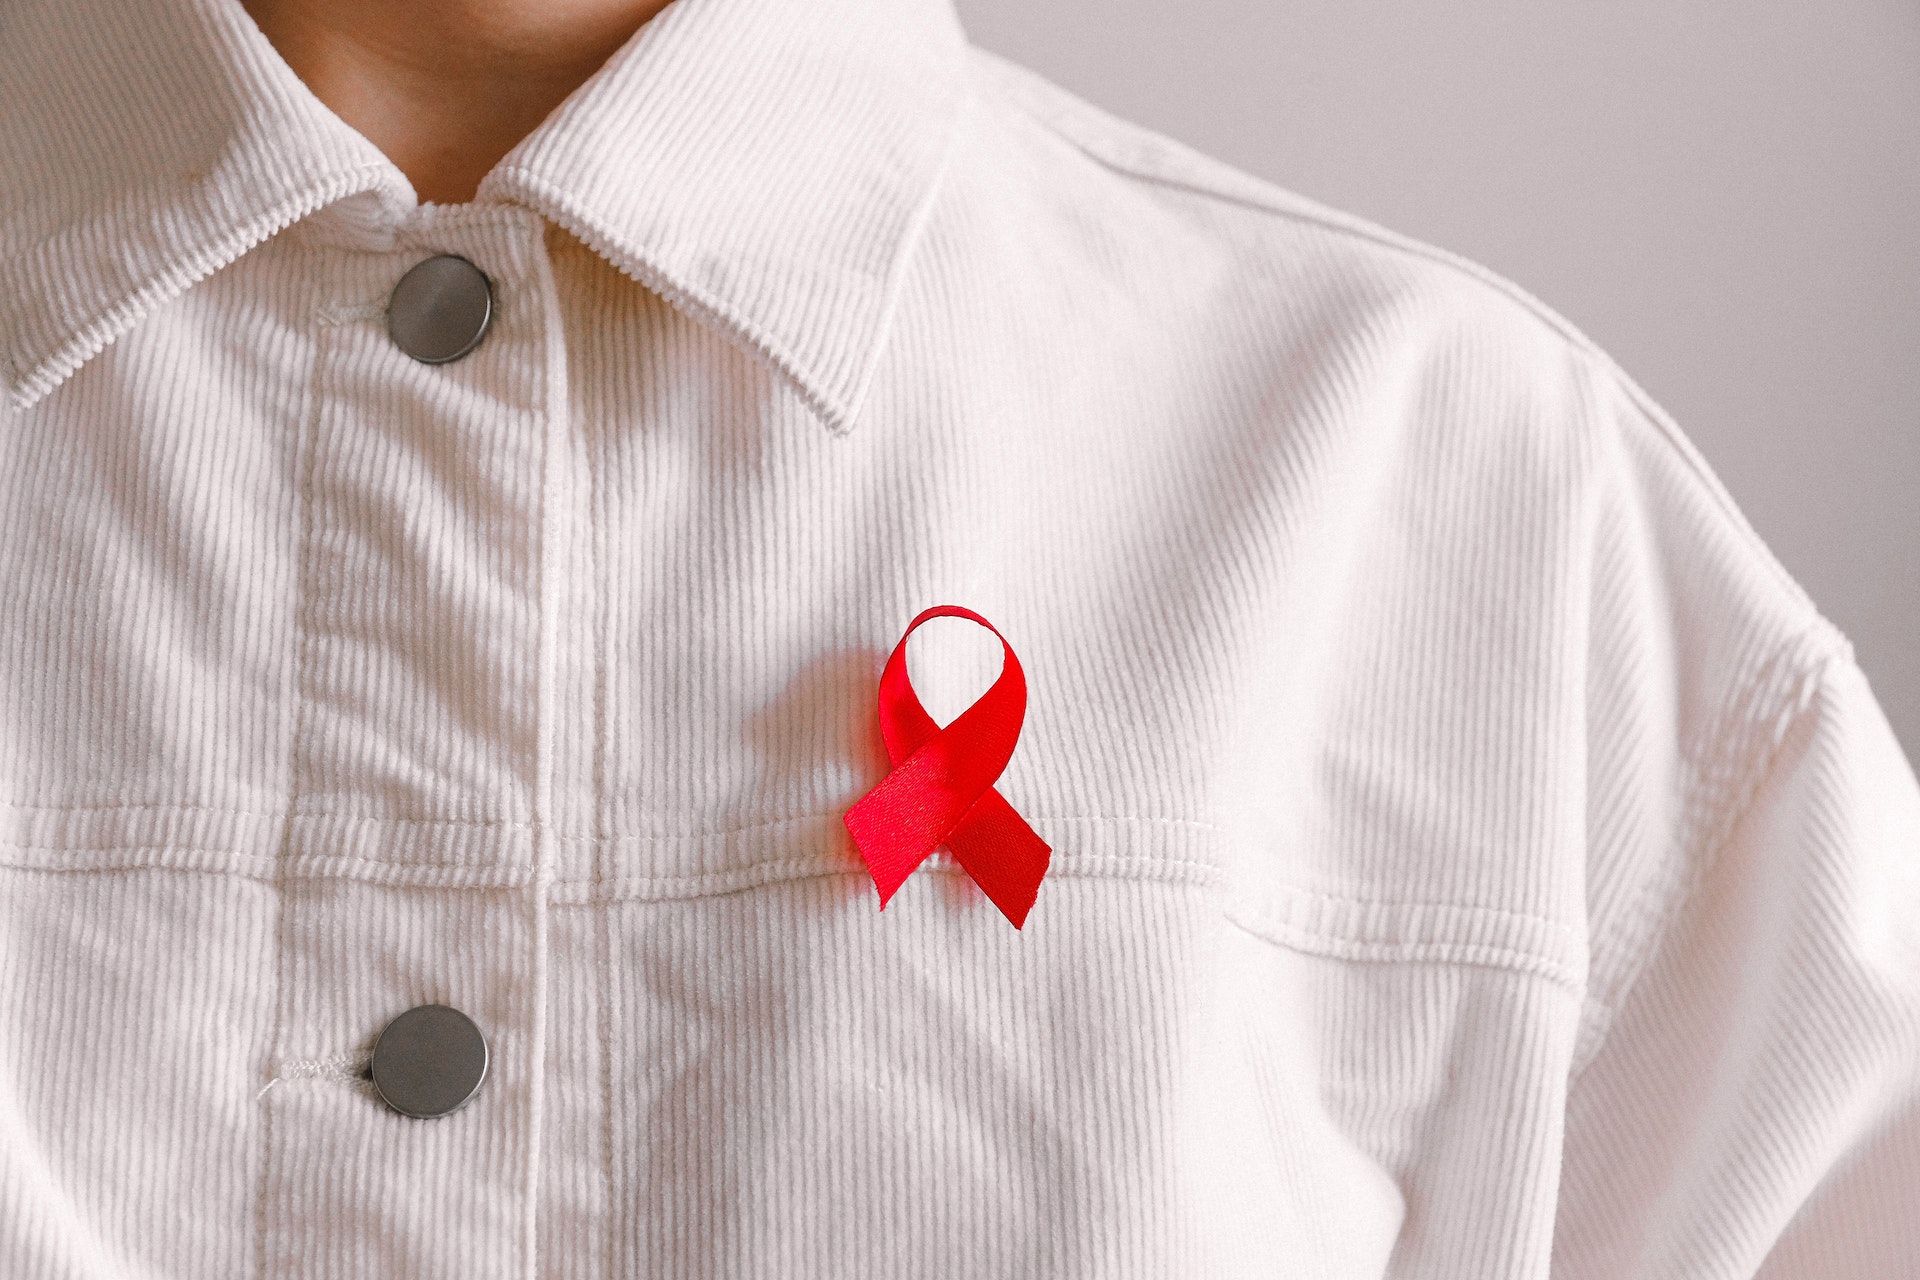 Шоста людина змогла повністю вилікуватись від ВІЛ - Здоровʼя 24